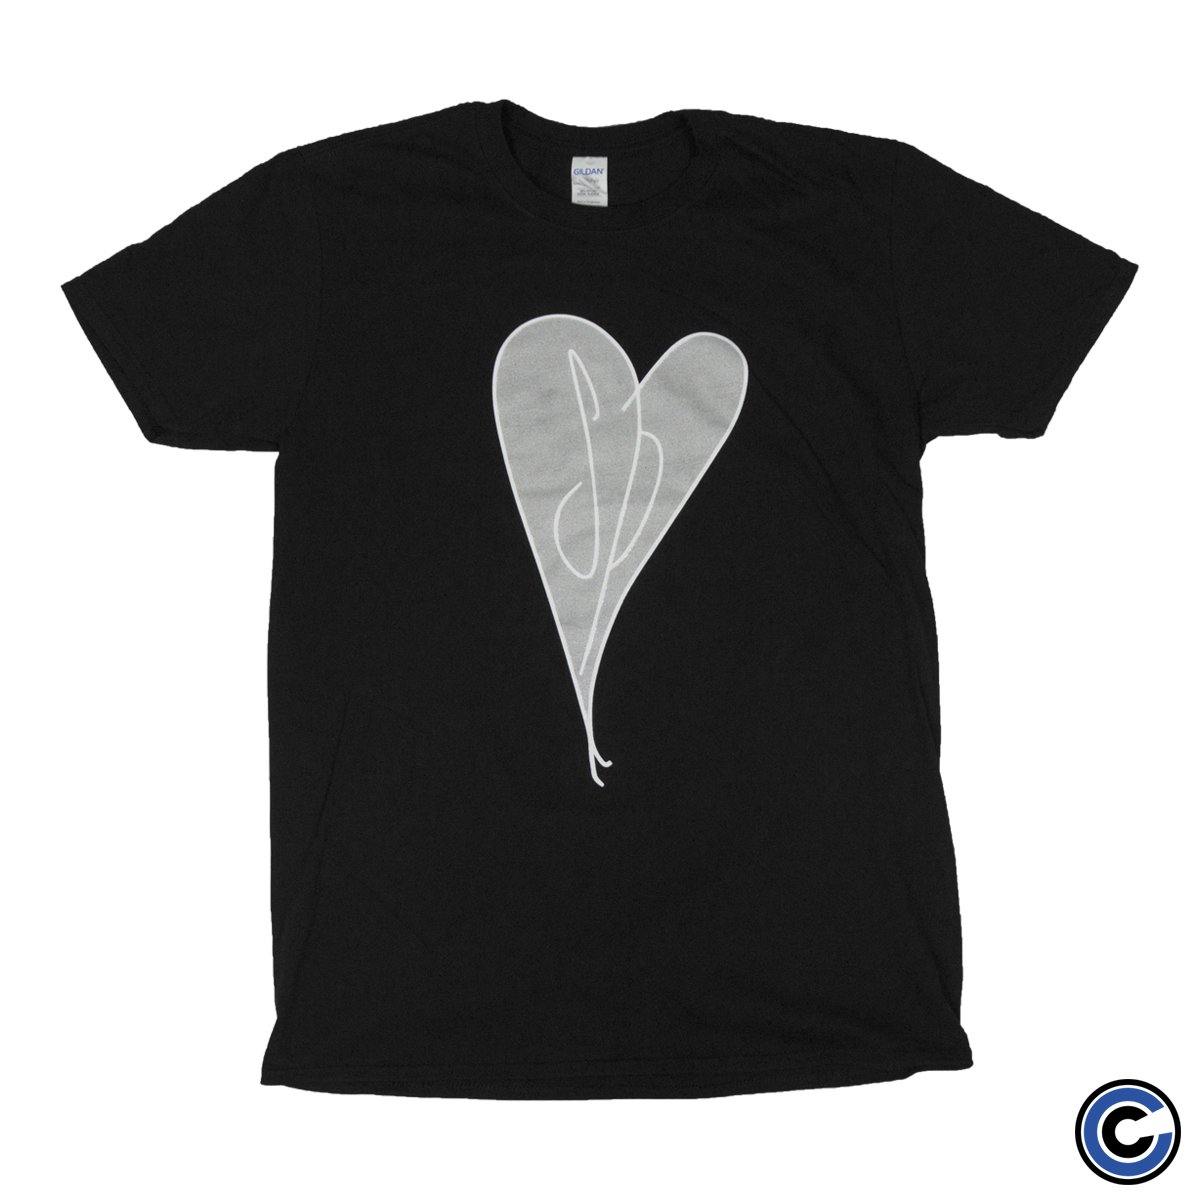 Buy – Smashing Pumpkins "Initial Heart" Shirt – Band & Music Merch – Cold Cuts Merch